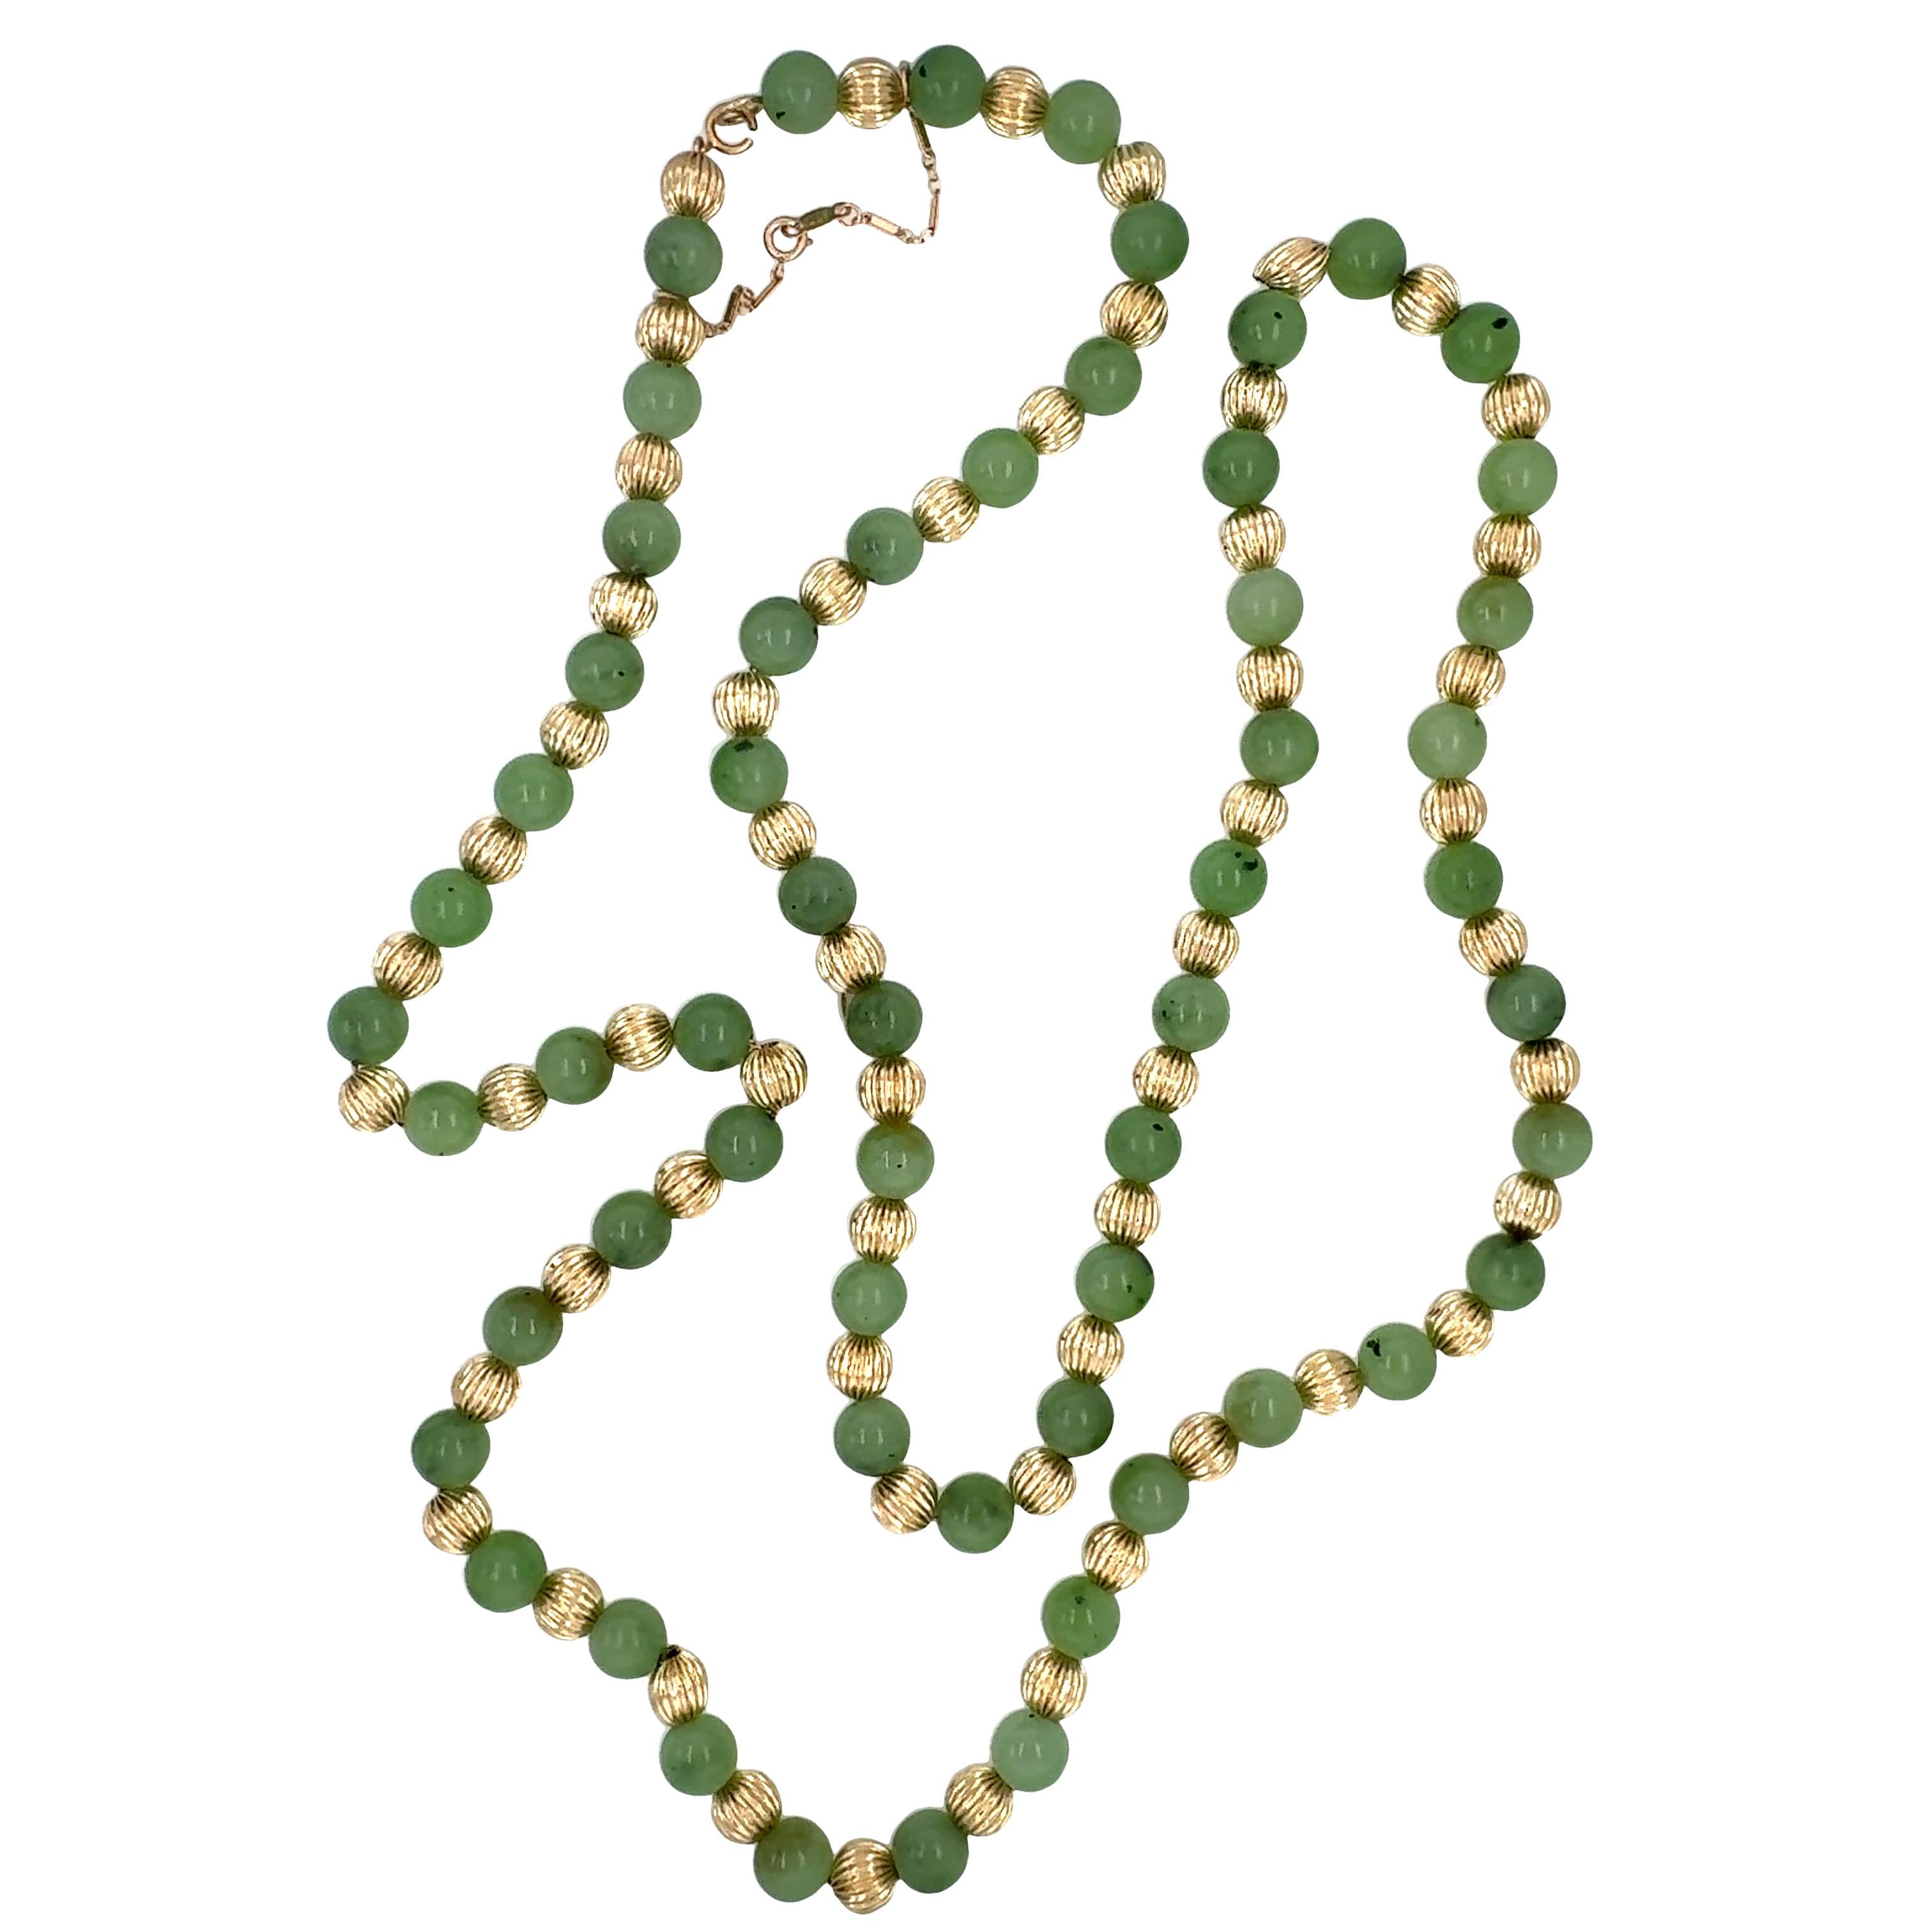 Halskette aus 14K Gelbgold mit Perlen und Jade-Perlen